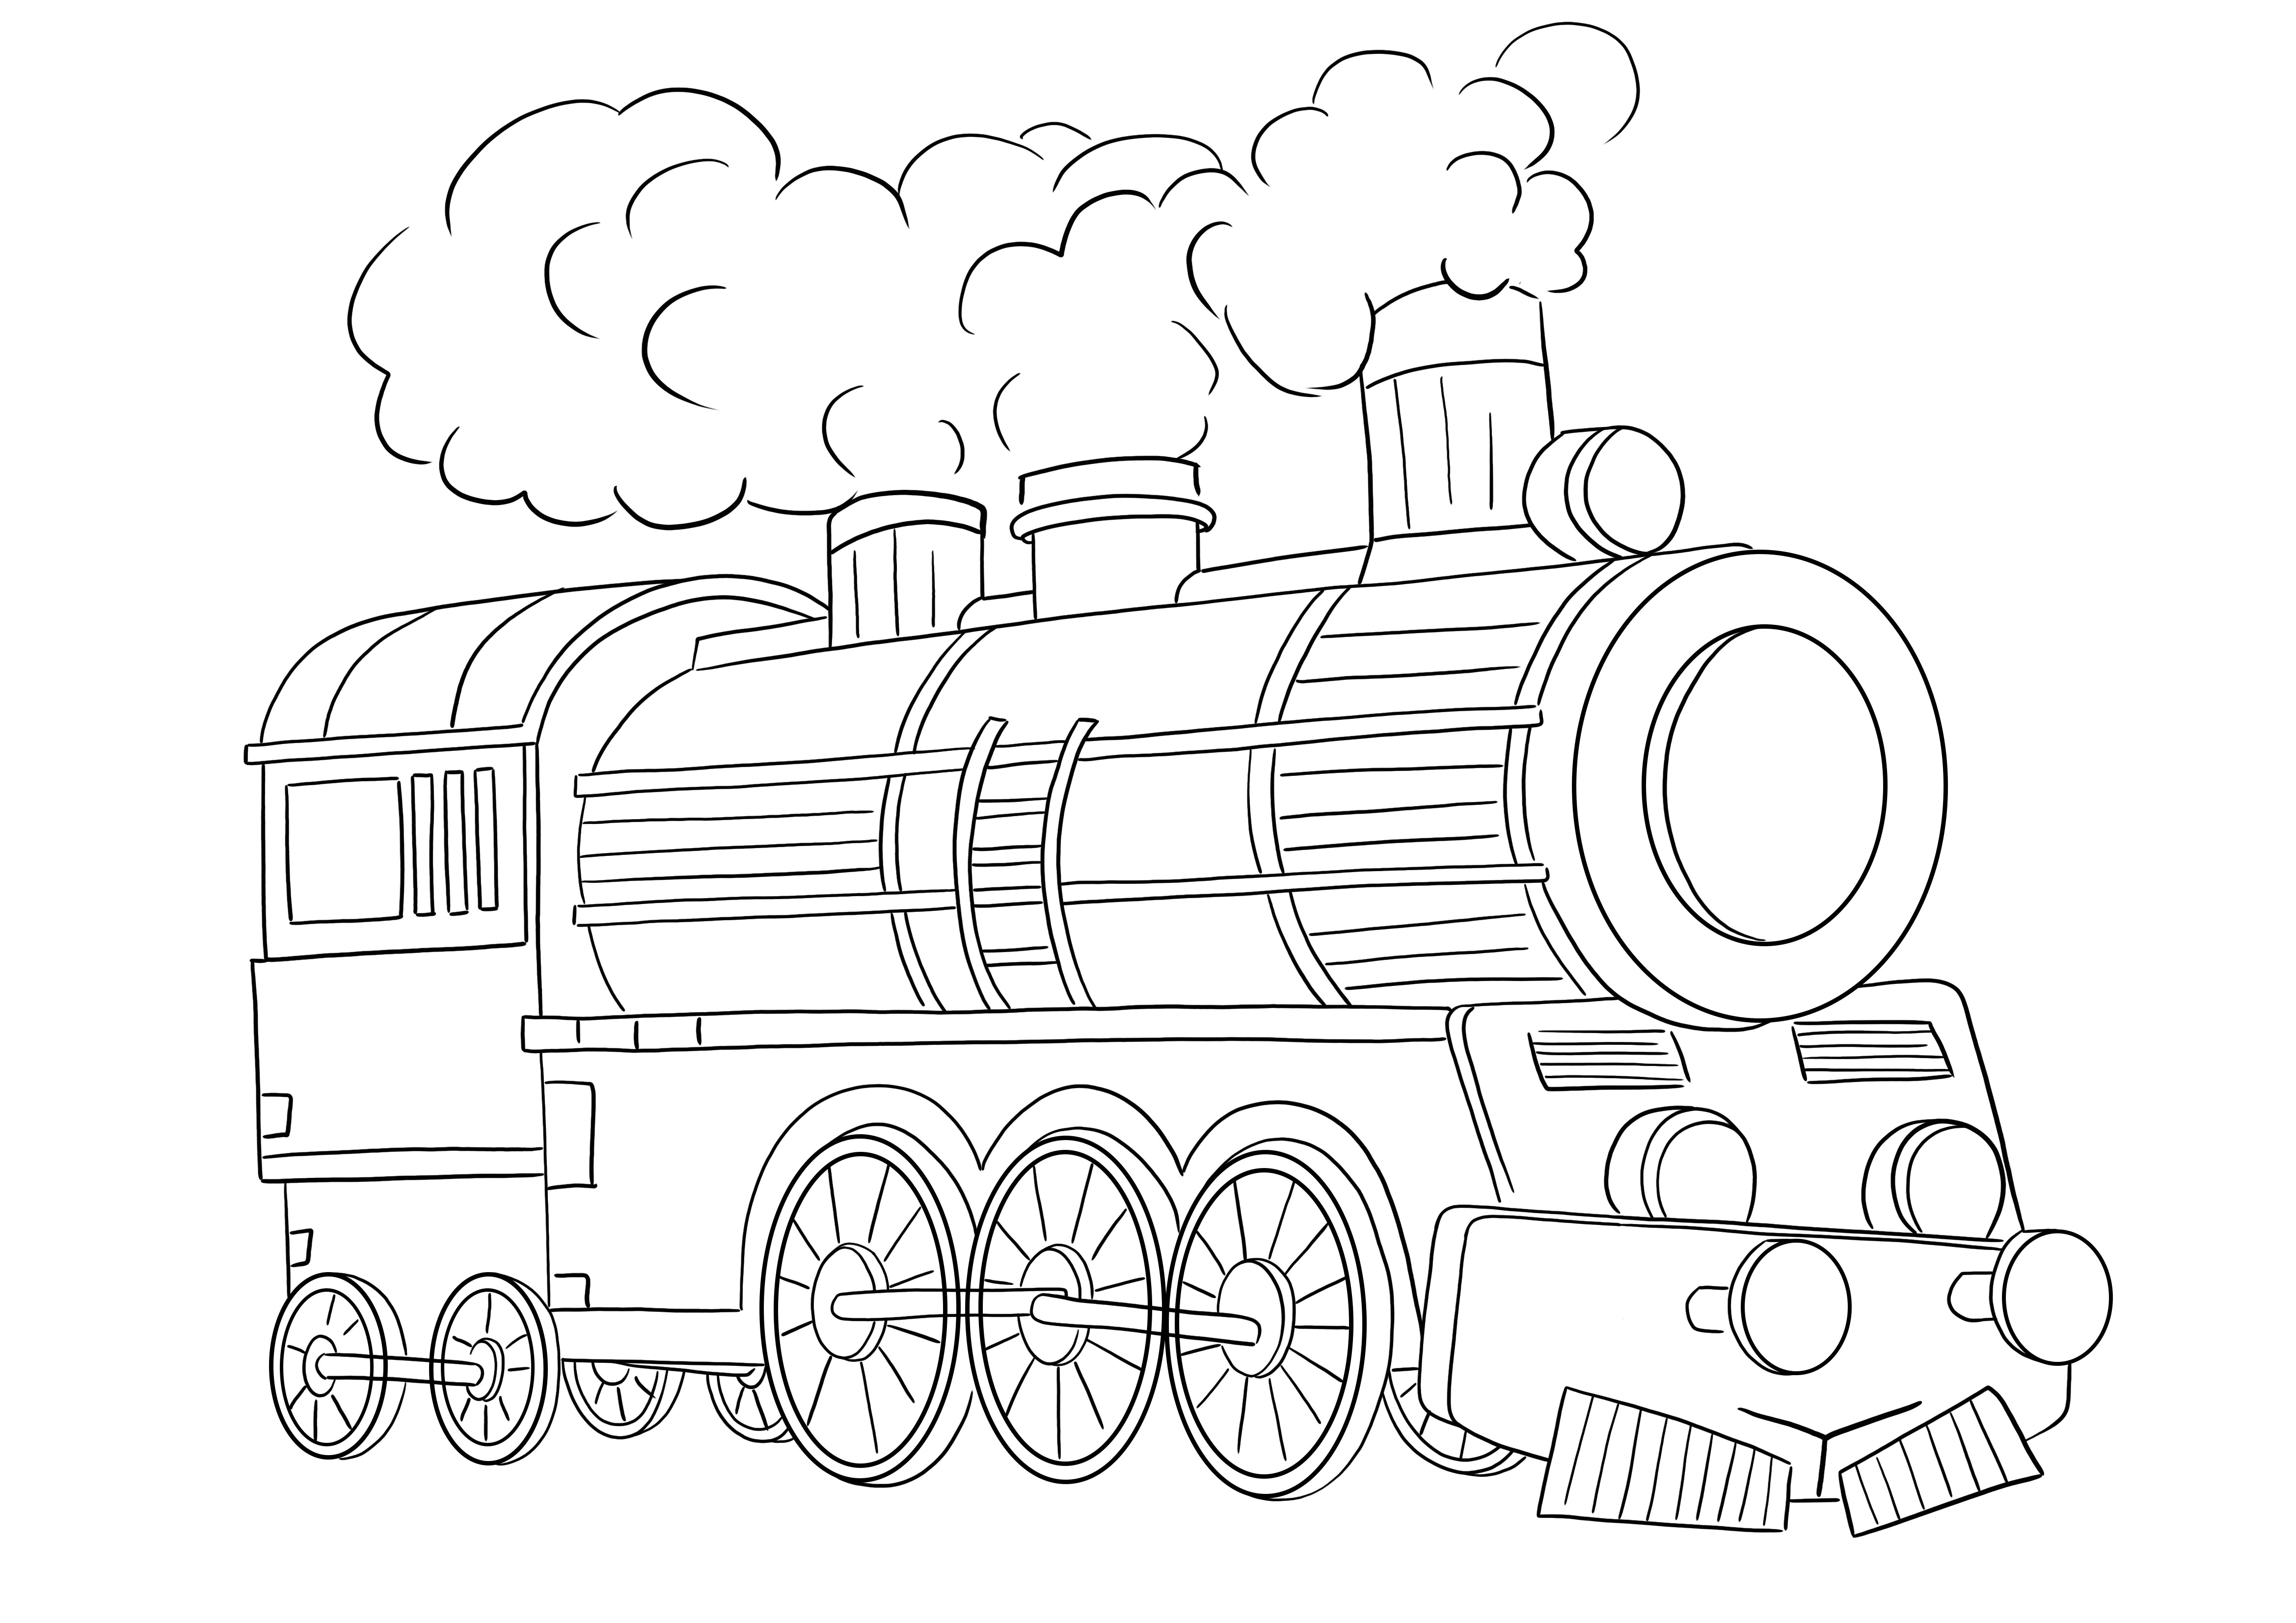 Dampflokomotive zum Ausmalen und zum kostenlosen Ausdrucken eines Bildes zum einfachen Ausmalen